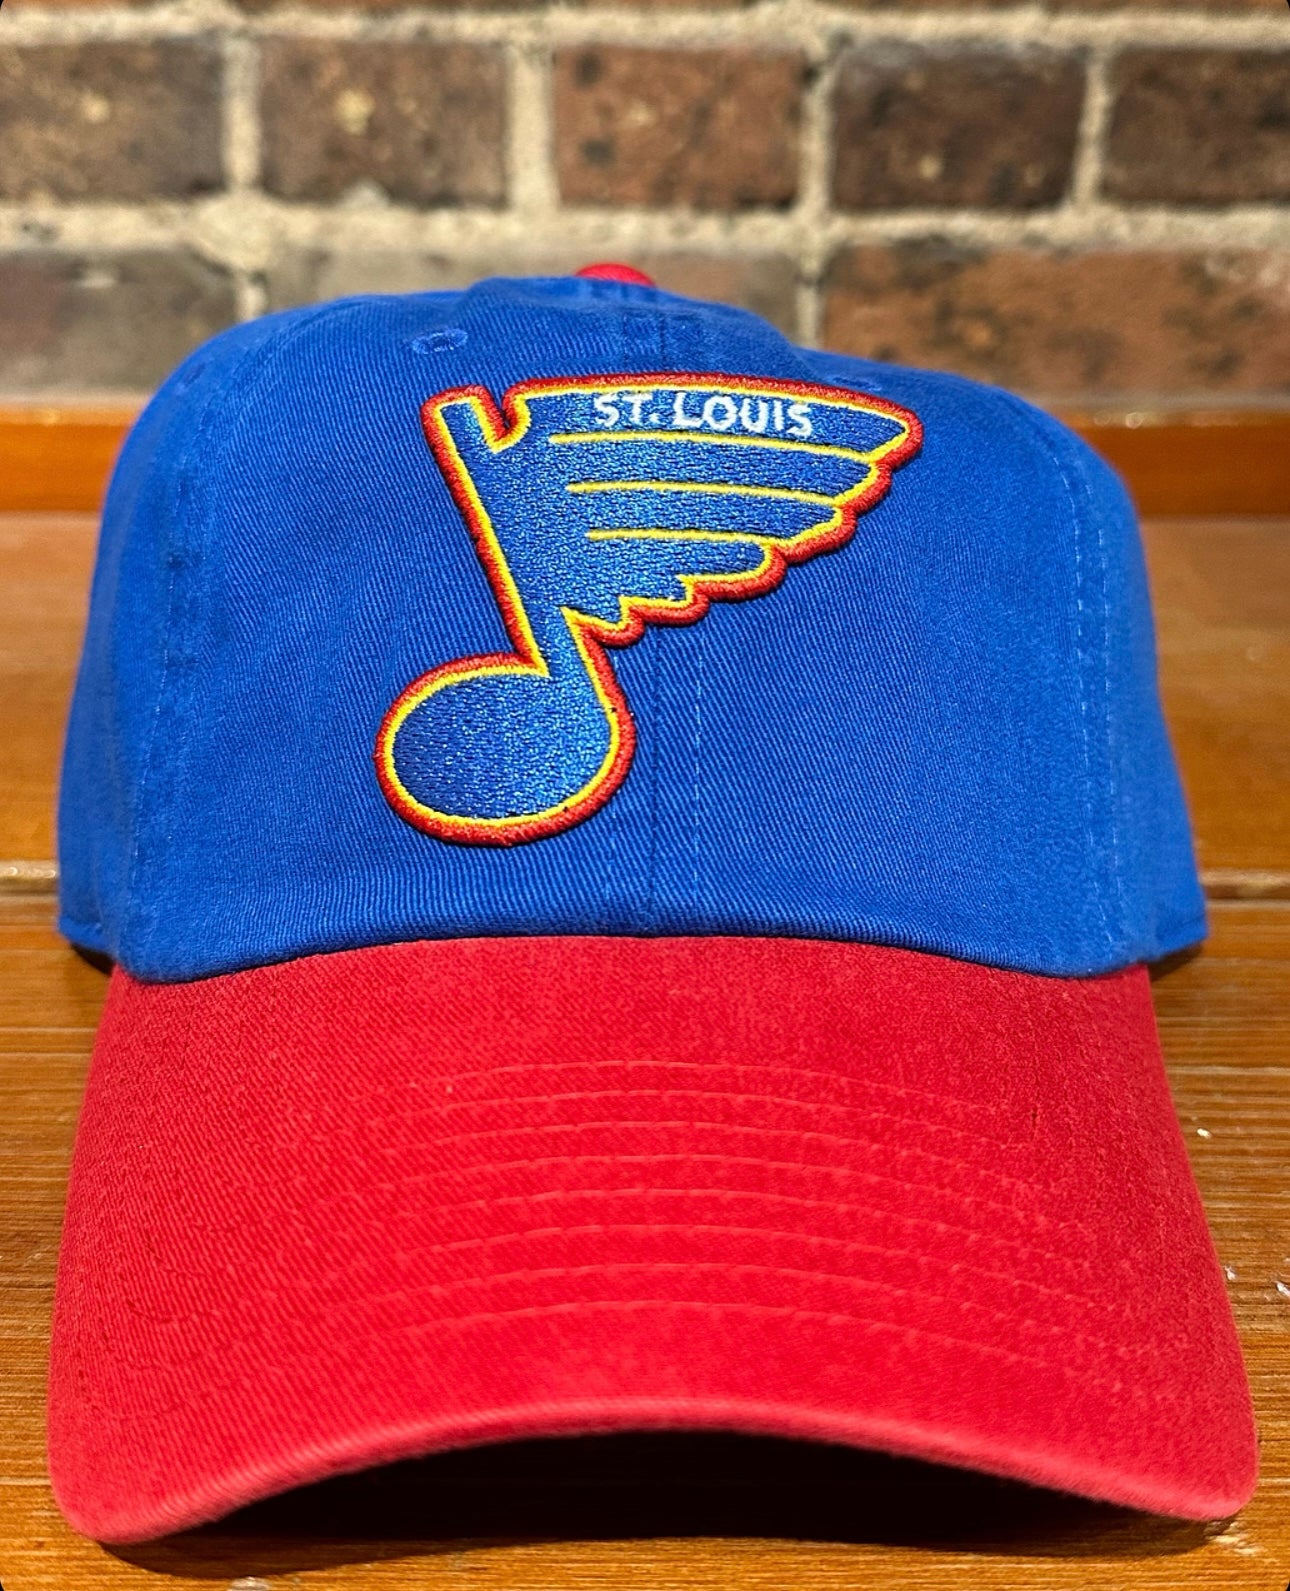 St Louis Blue Blue Line Hat - American Needle